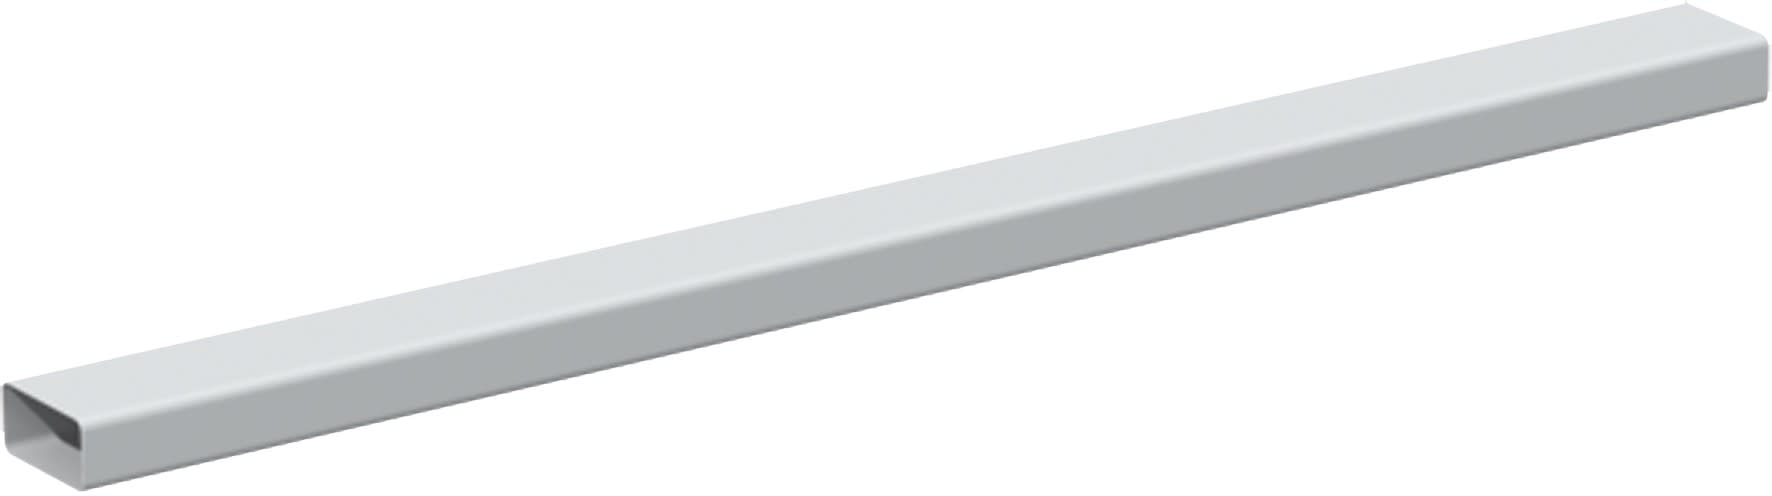 S&P - Conduit rectangulaire PVC rigide 55 x 110 mm, longueur 1.5 m, gamme TUBPLA